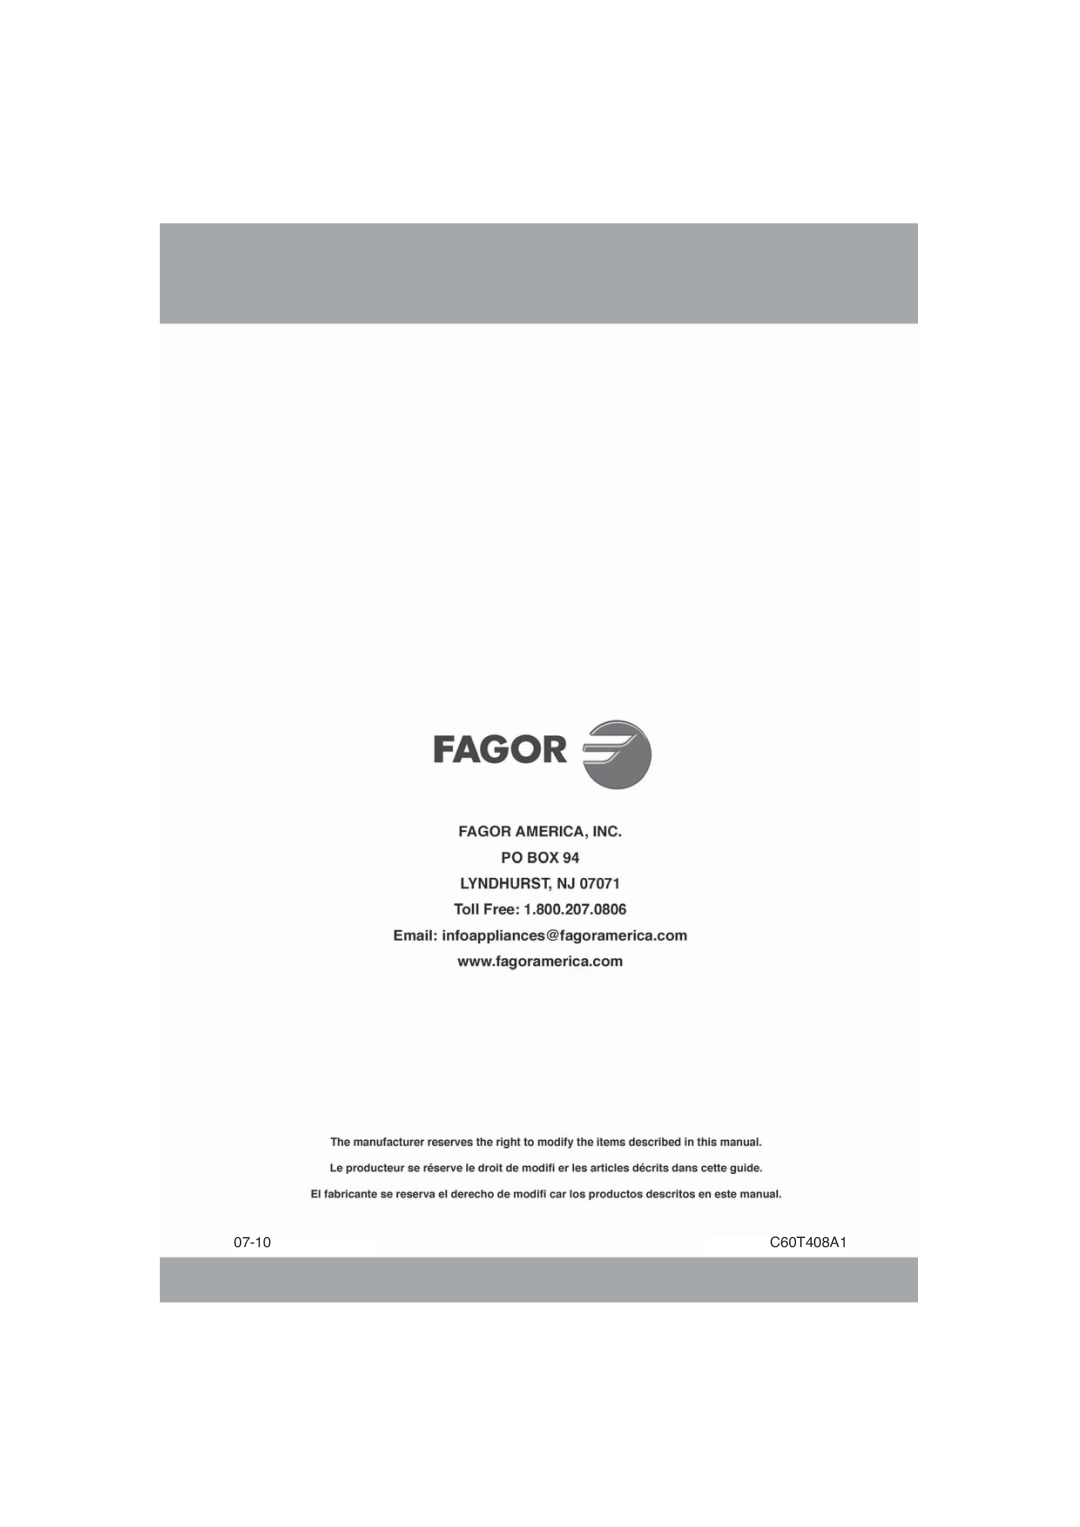 Fagor America 5HA-196 X, 5HA-200 LX, 5HA-200 RX manual 07-10, C60T408A1 